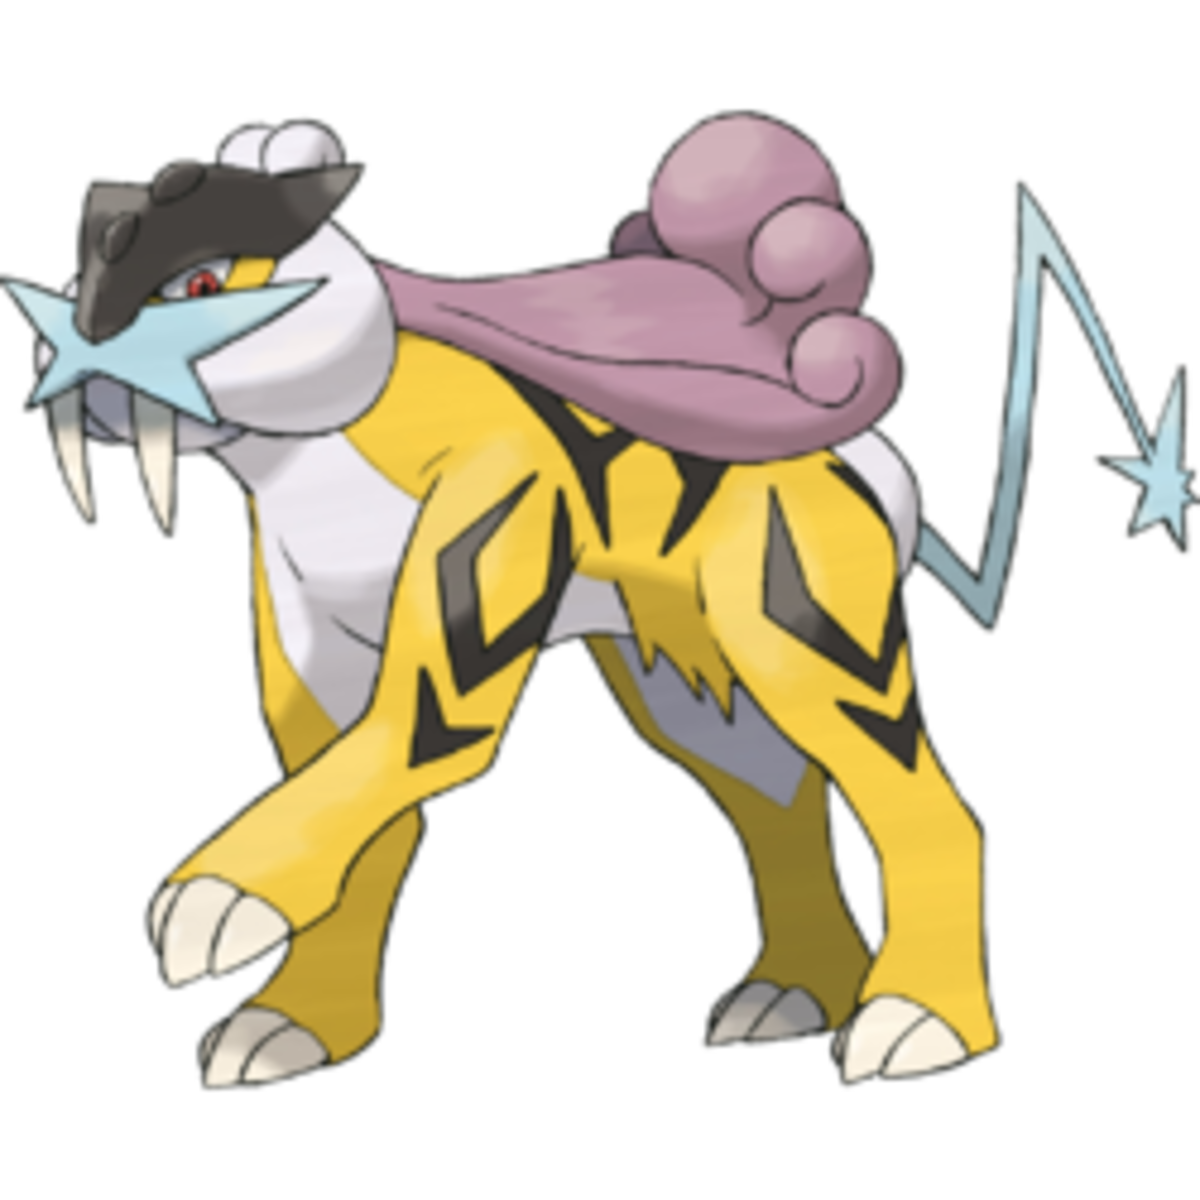 Categoria:Pokémon do tipo Elétrico, PokéPédia